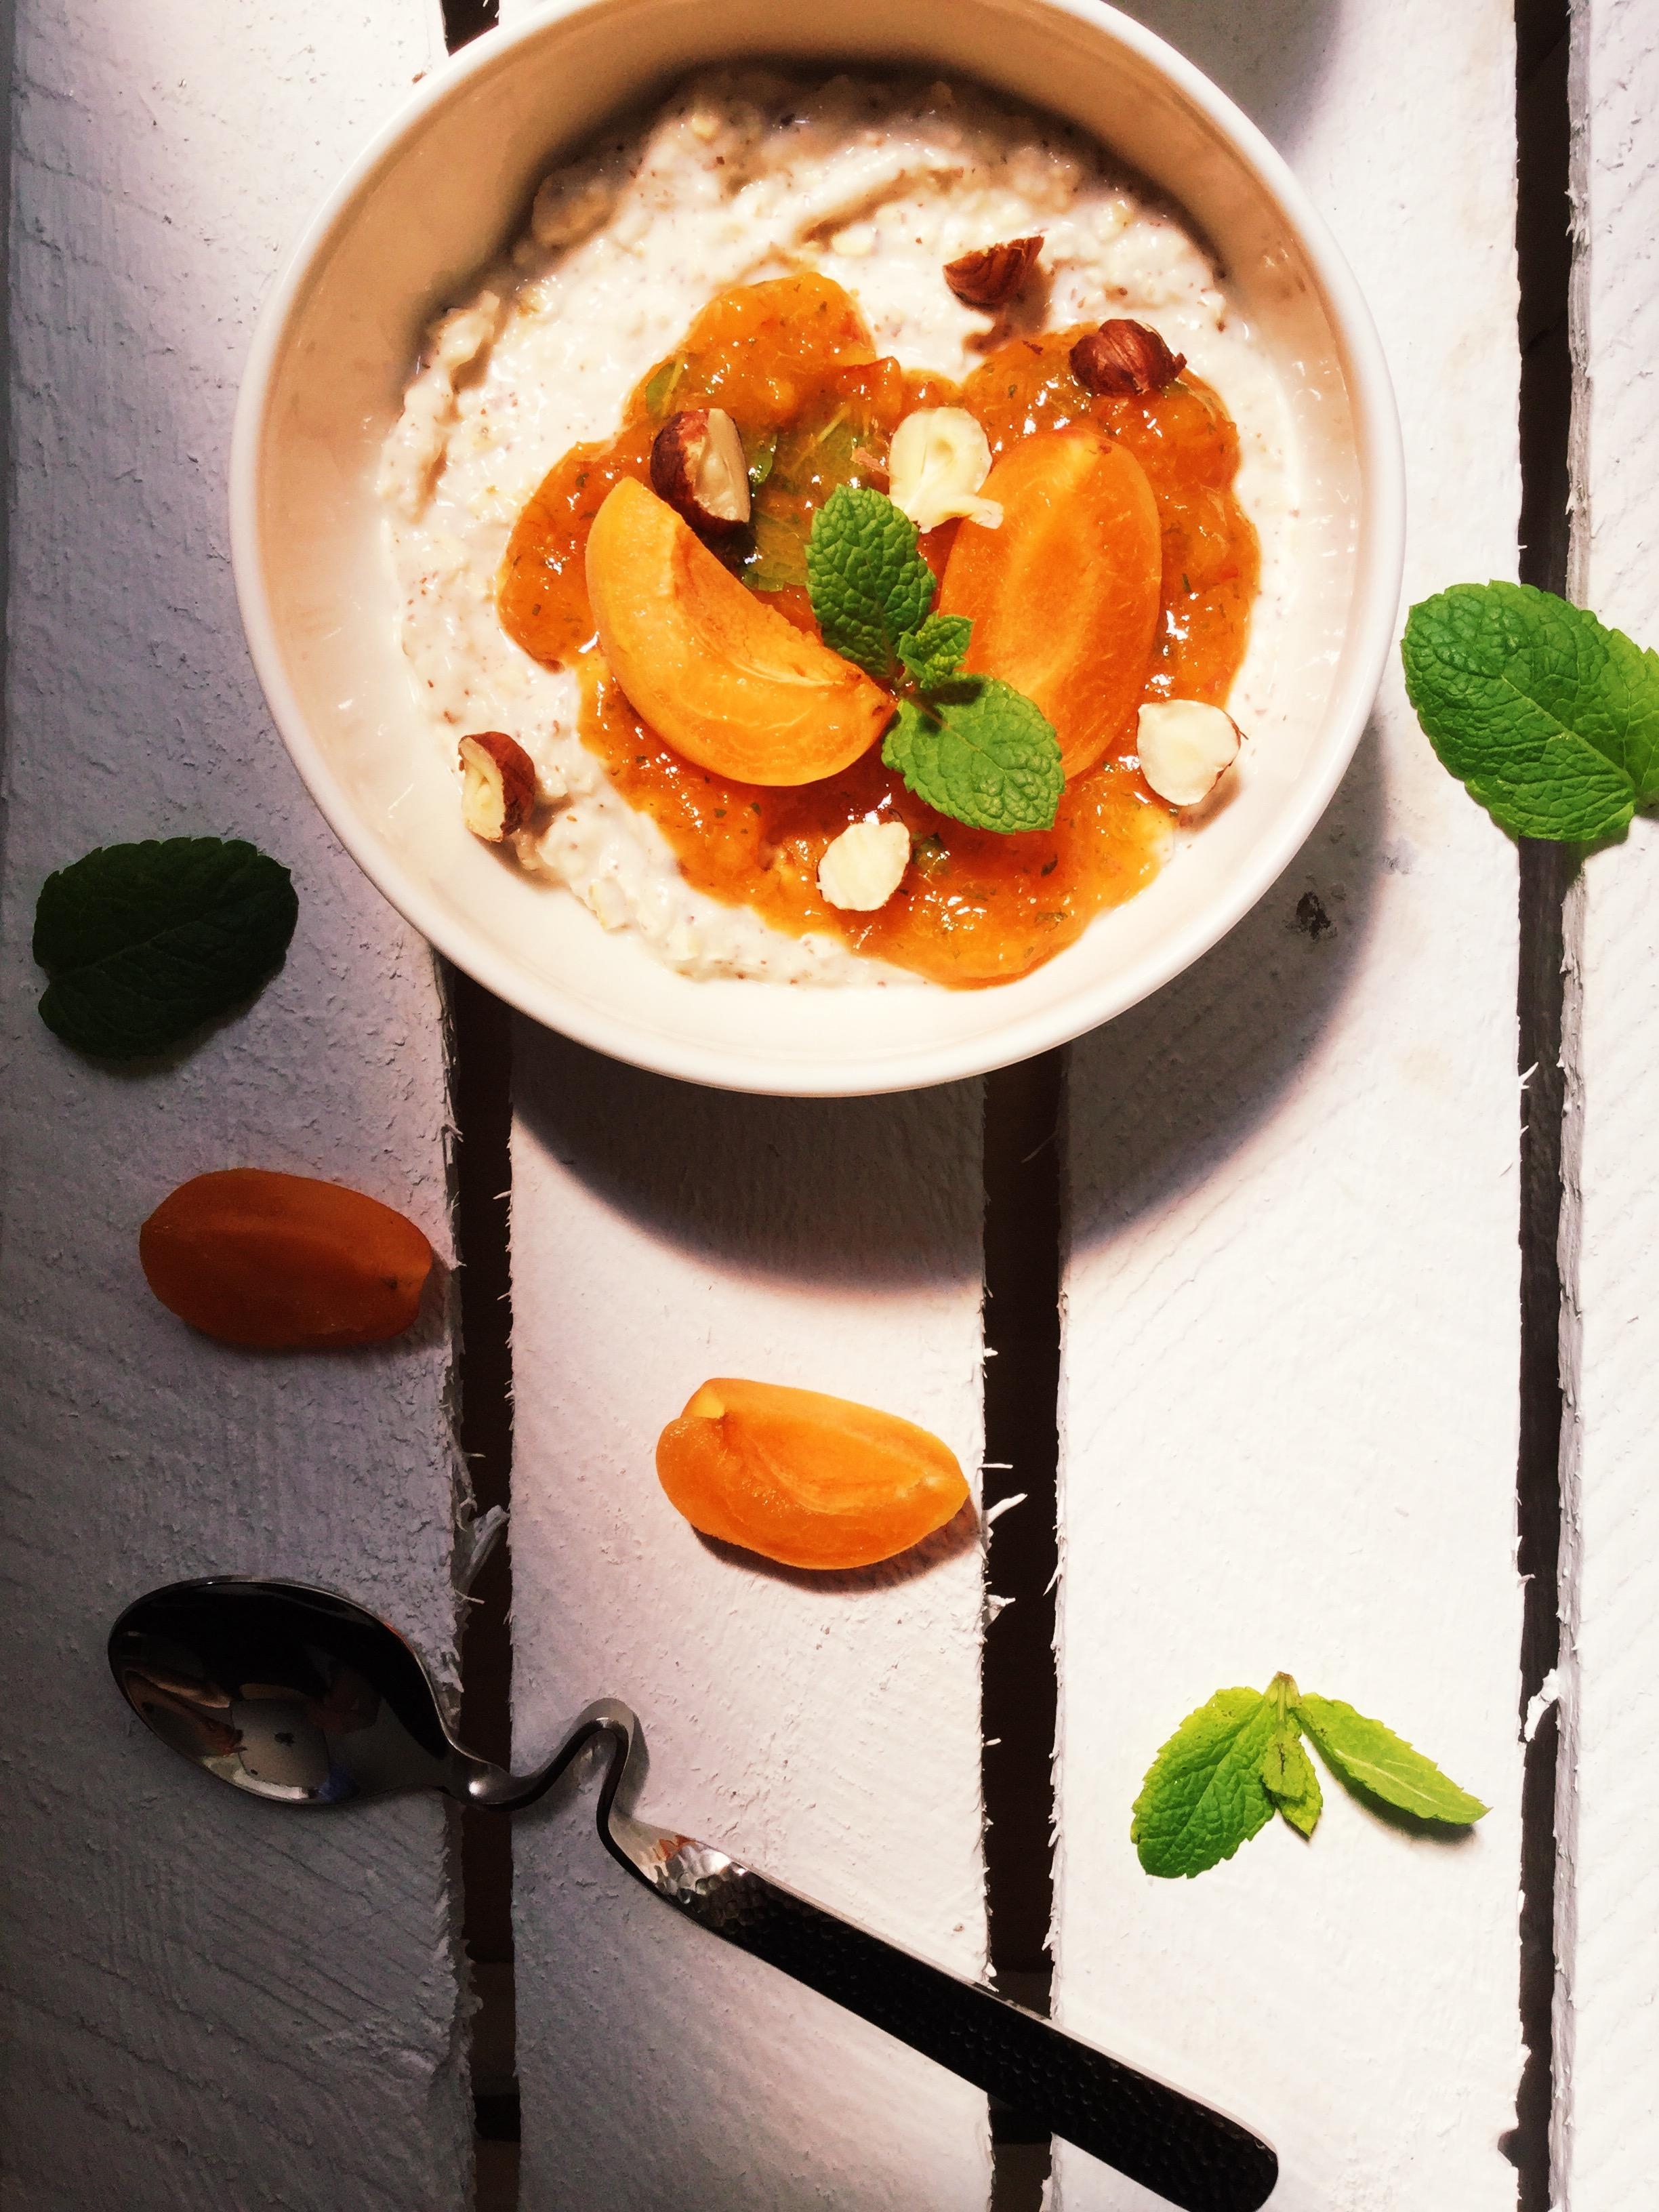 Köstlicher Start in den Tag 😋🌱🍑 #food #aprikosen #kreativ #foodphotography #vegan #gesund #lecker #frühstück